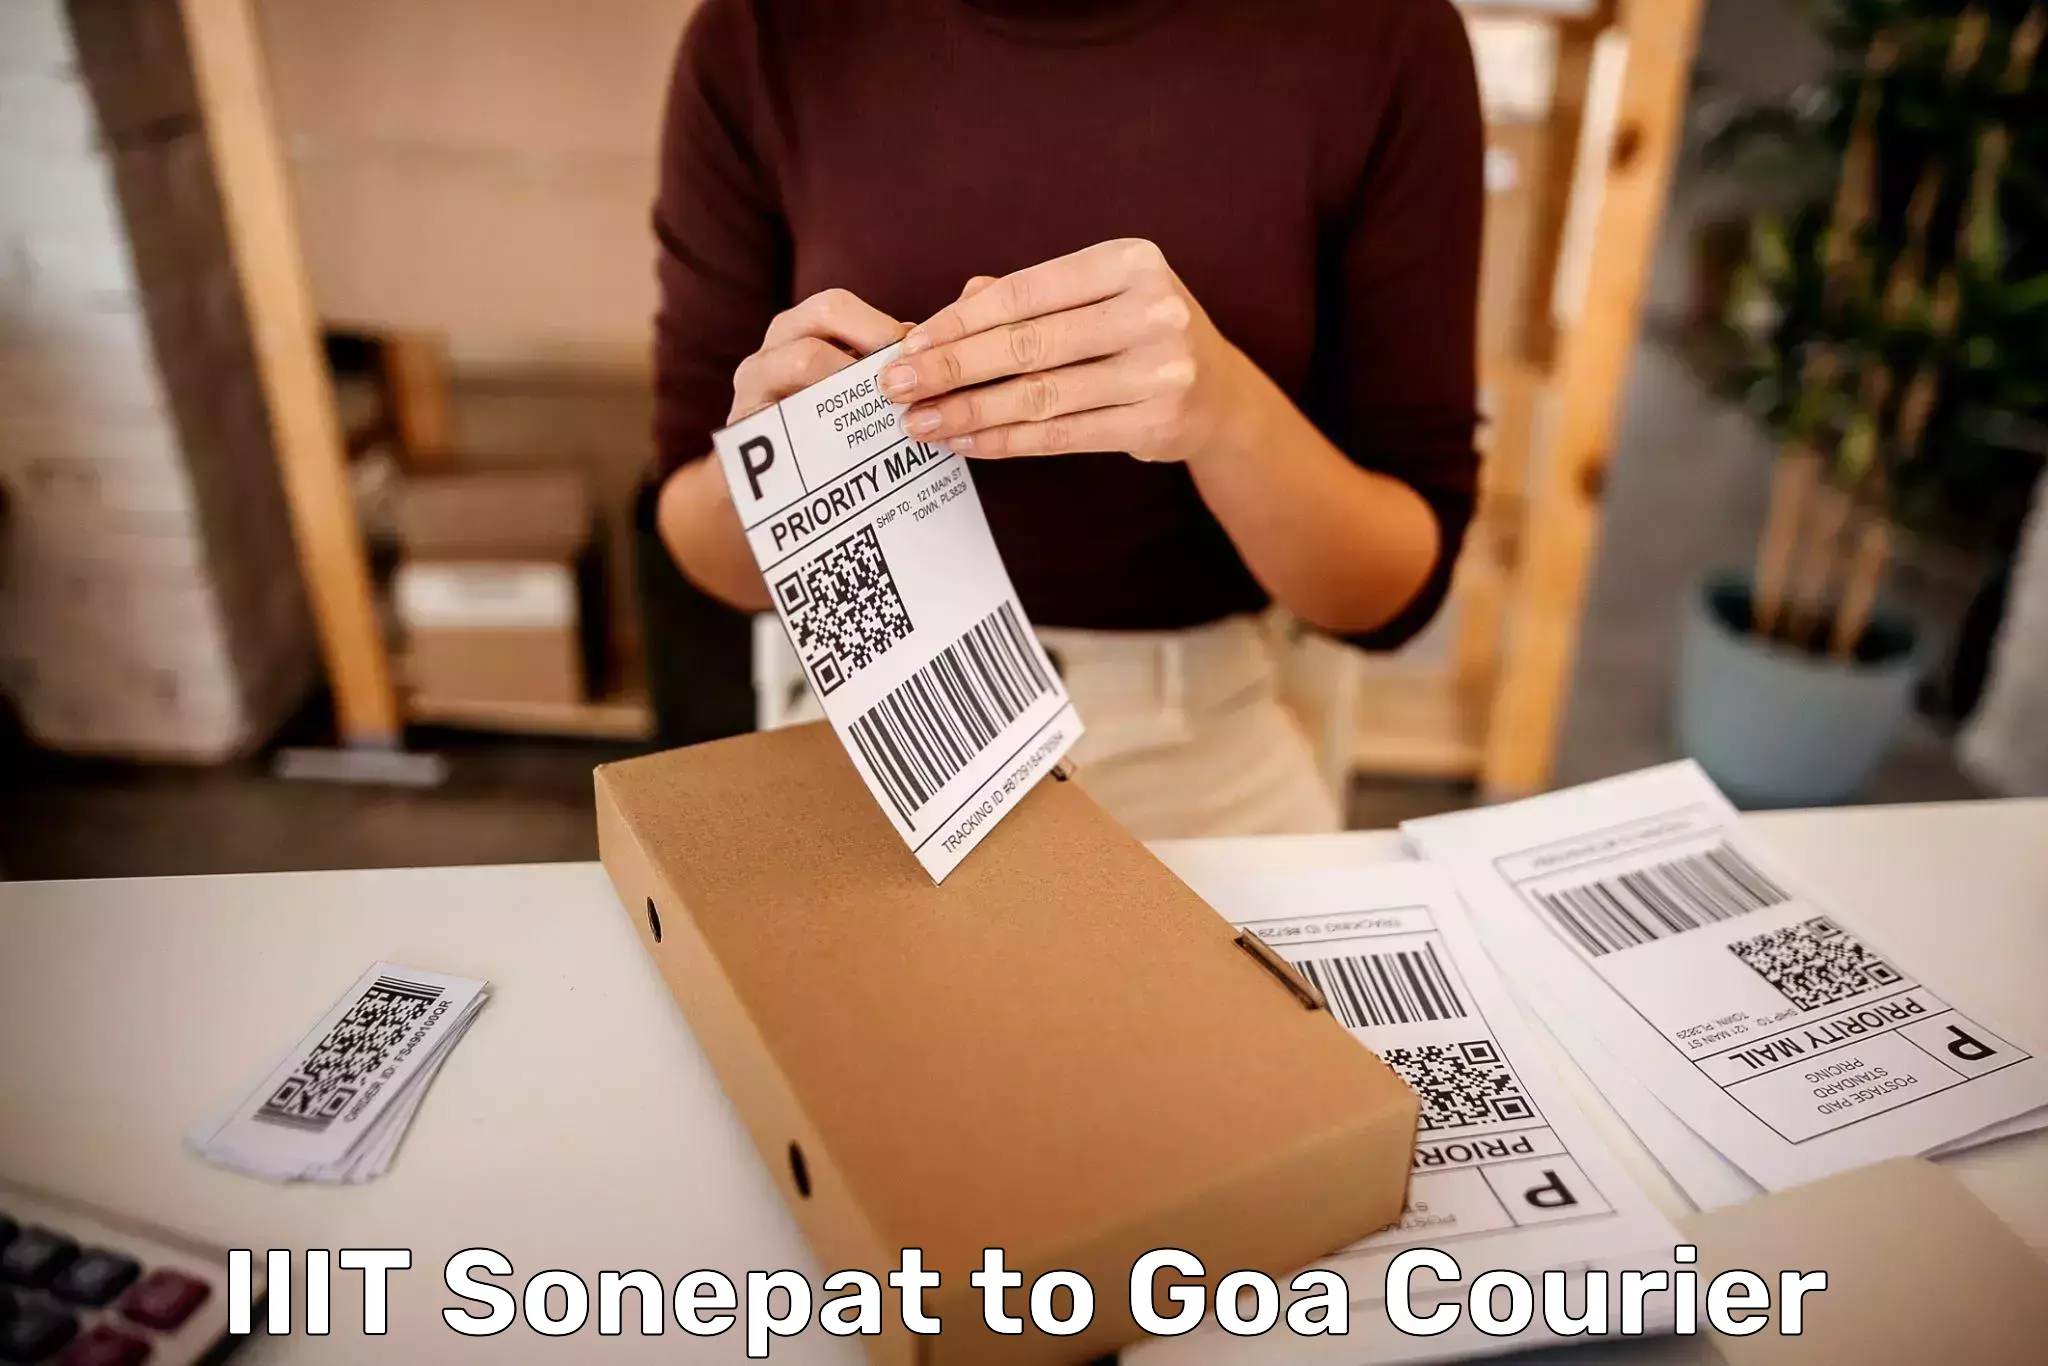 Baggage transport professionals IIIT Sonepat to Goa